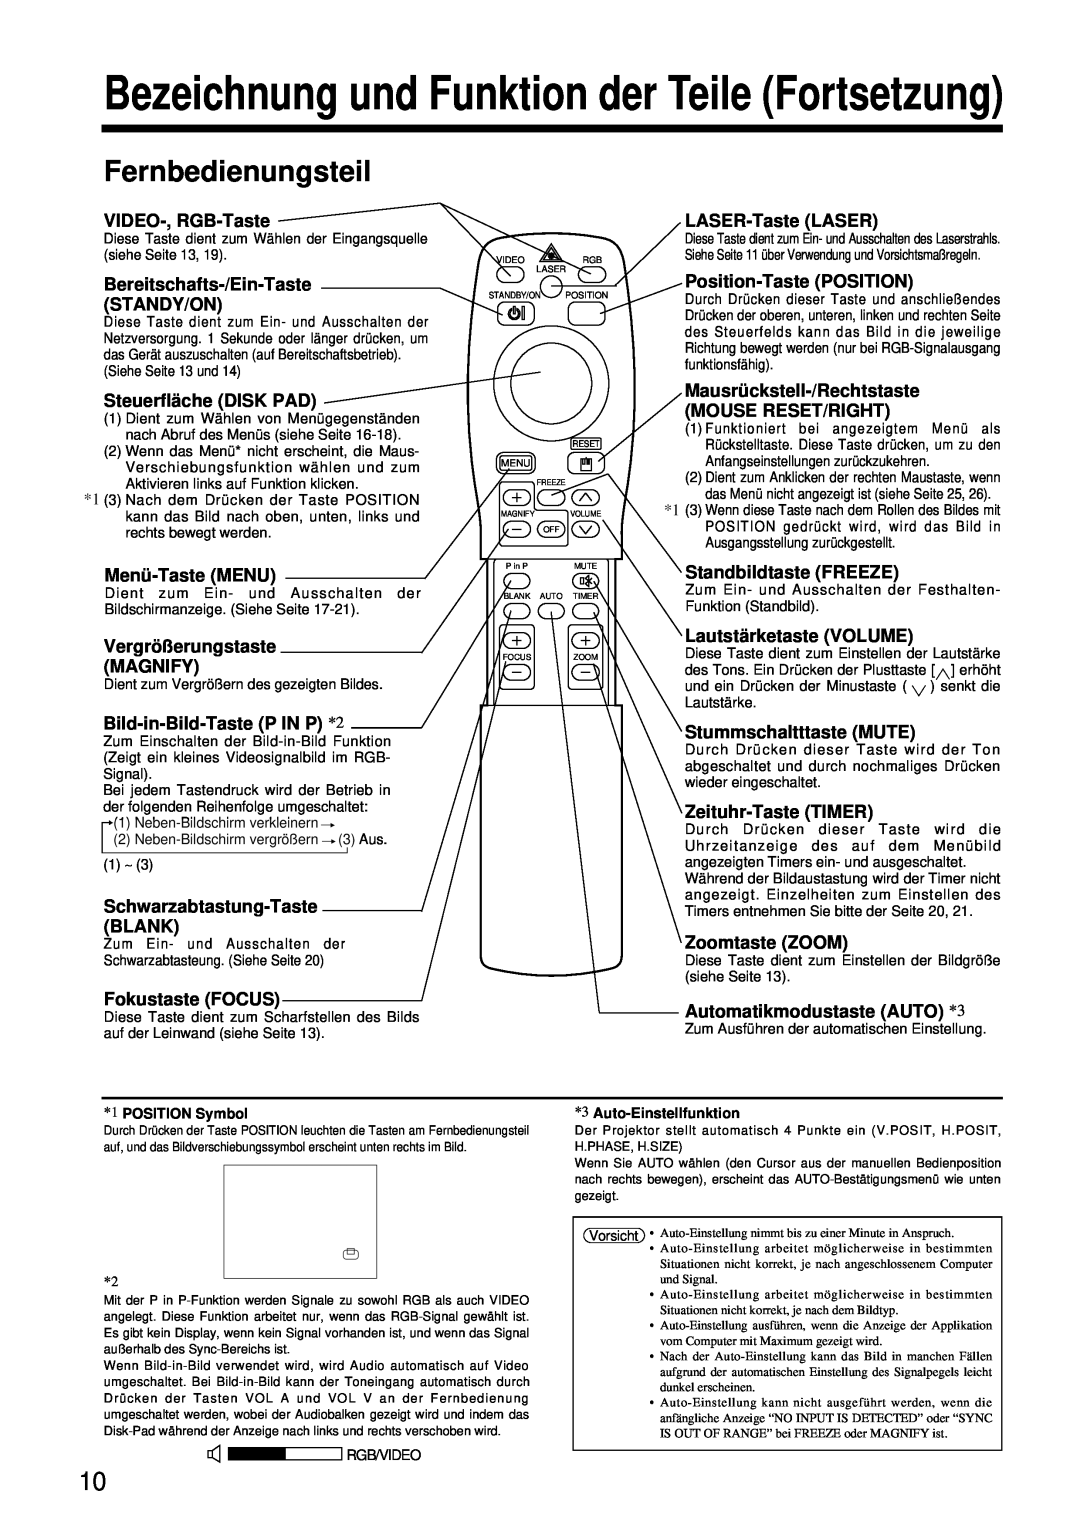 Hitachi CP-S860W user manual Fernbedienungsteil, Bezeichnung und Funktion der Teile Fortsetzung 